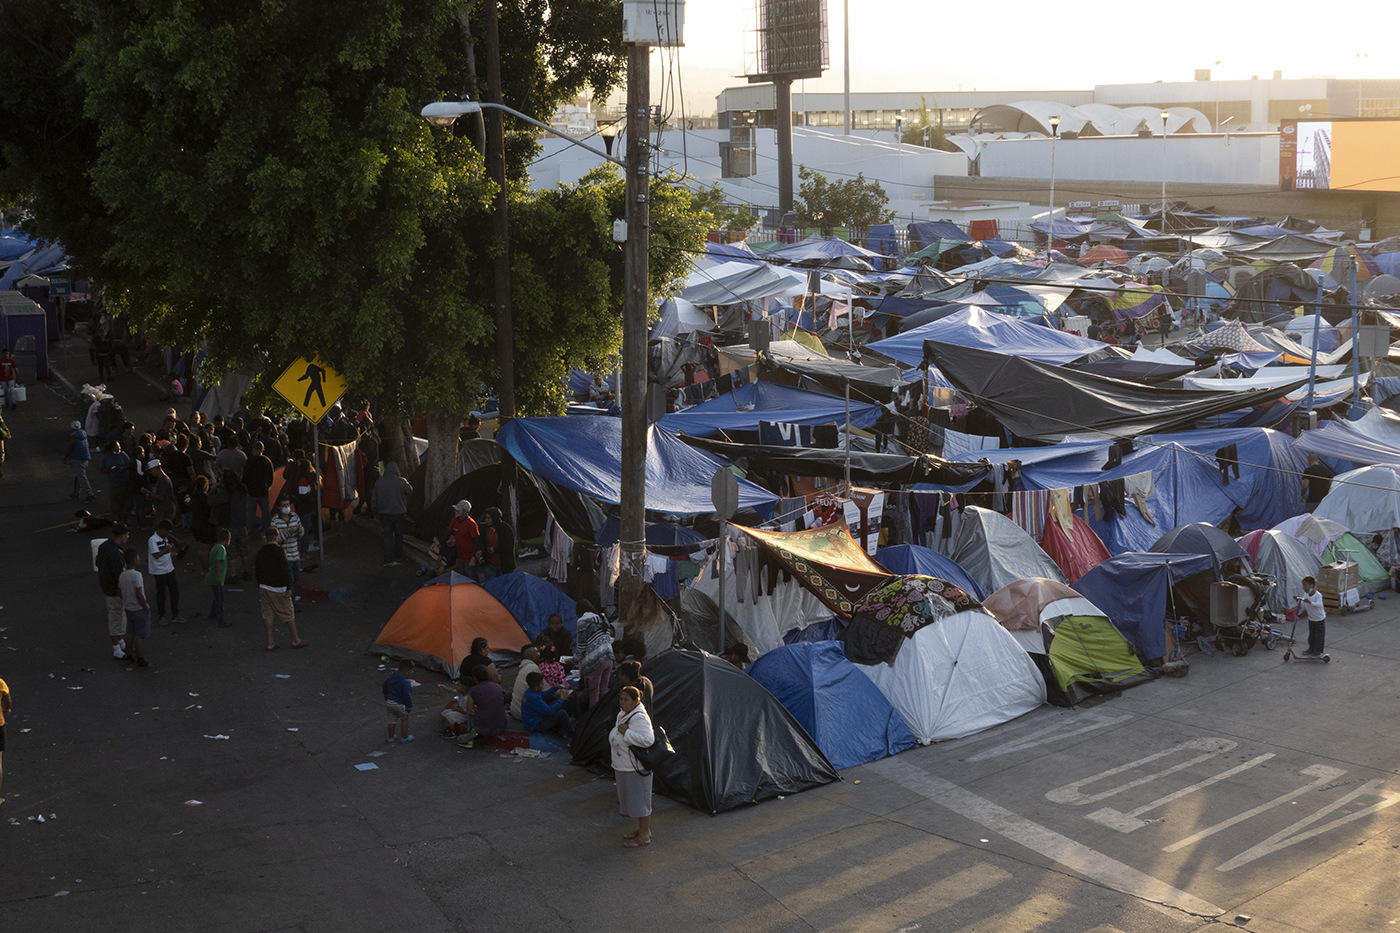 Campamentos como éste se han convertido en el hogar de miles de personas migrantes en Tijuana.